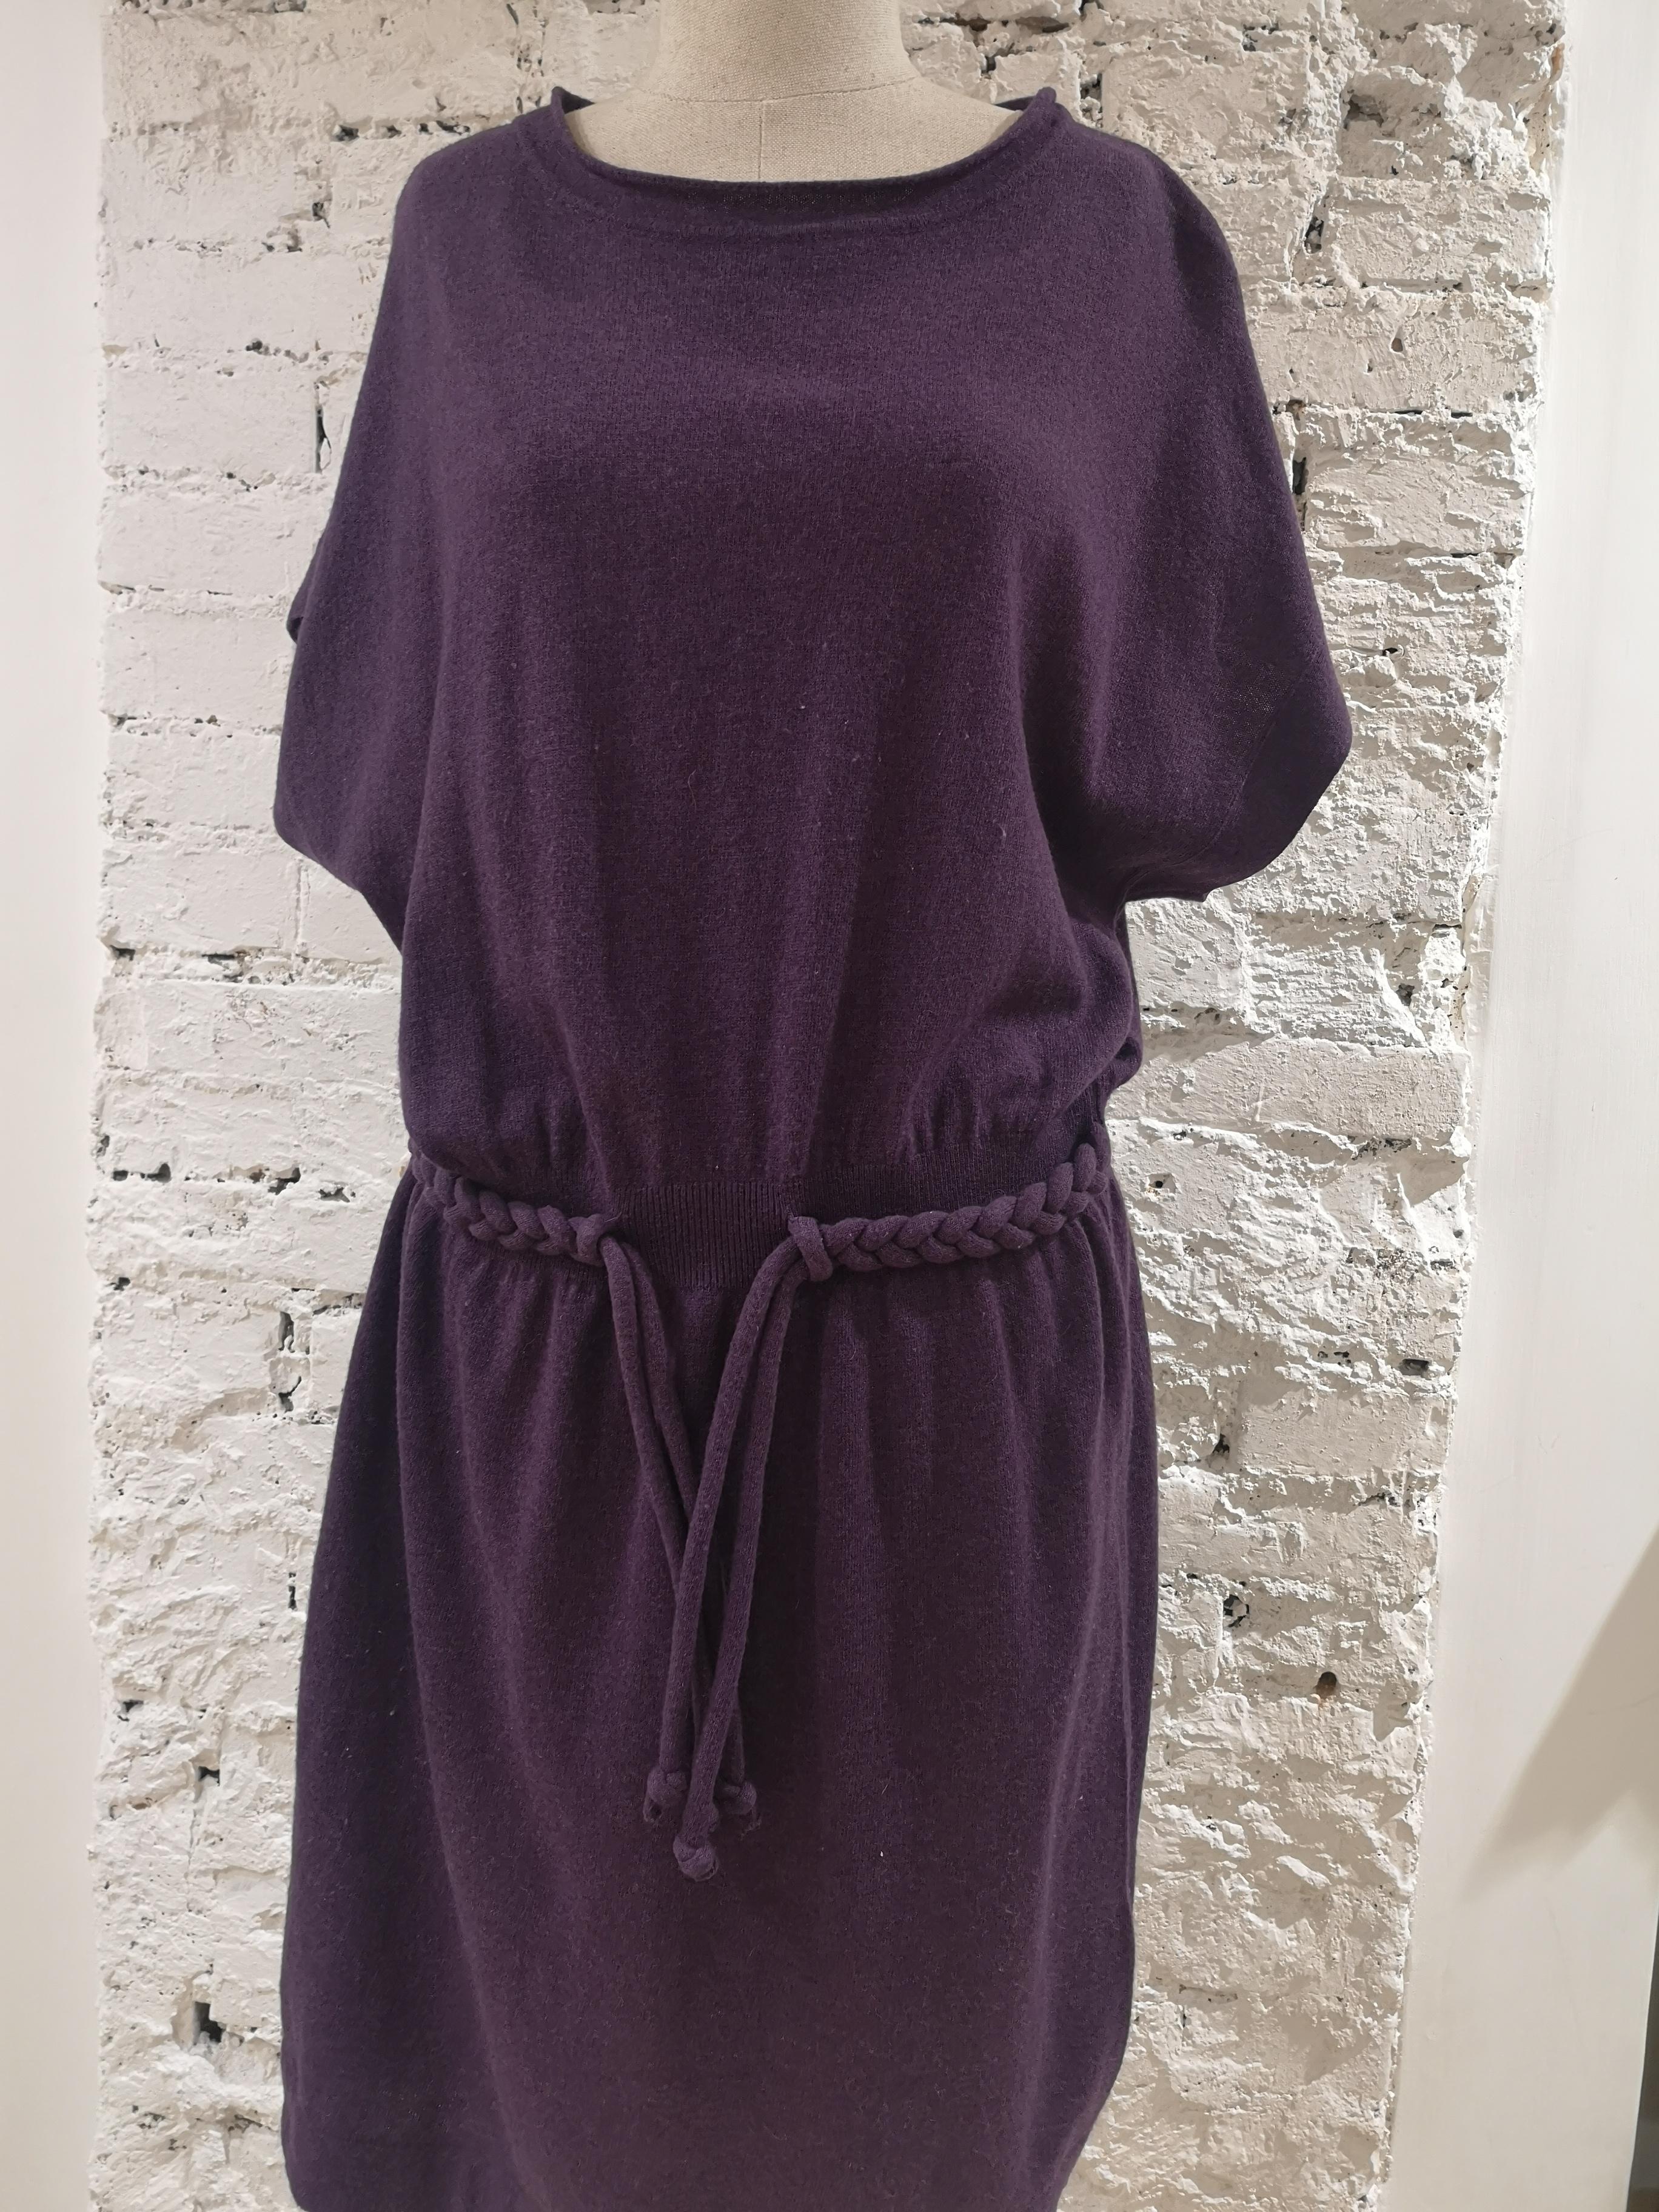 Moschino wool purple dress 6